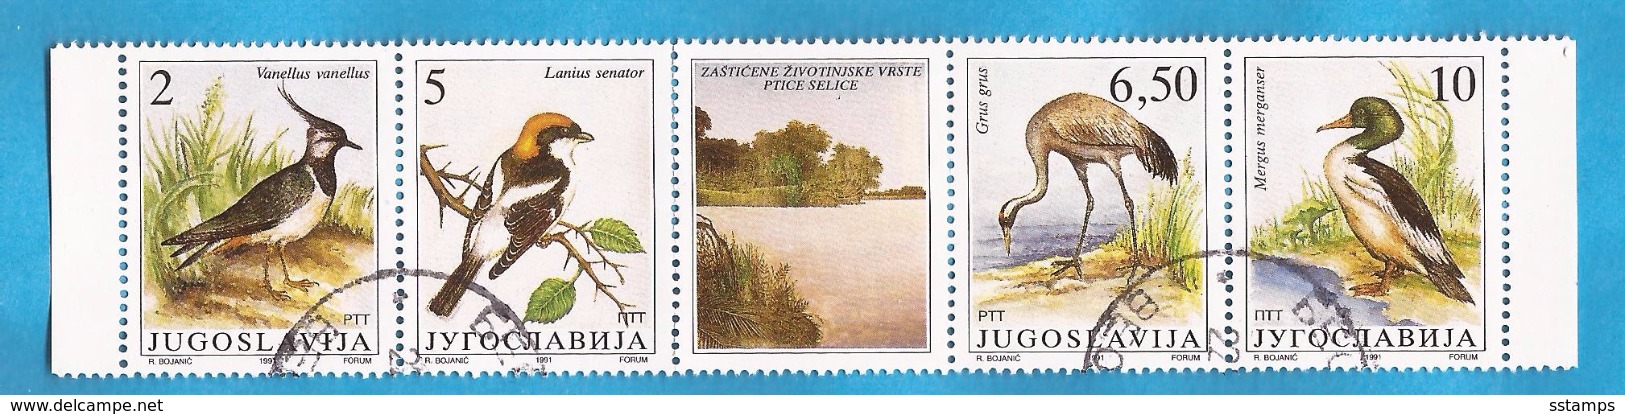 1991  246366  FAUNA WWF JUGOSLAVIJA   VOEGEL  BIRDS  GESCHUEZTE TIERE  USED - Used Stamps